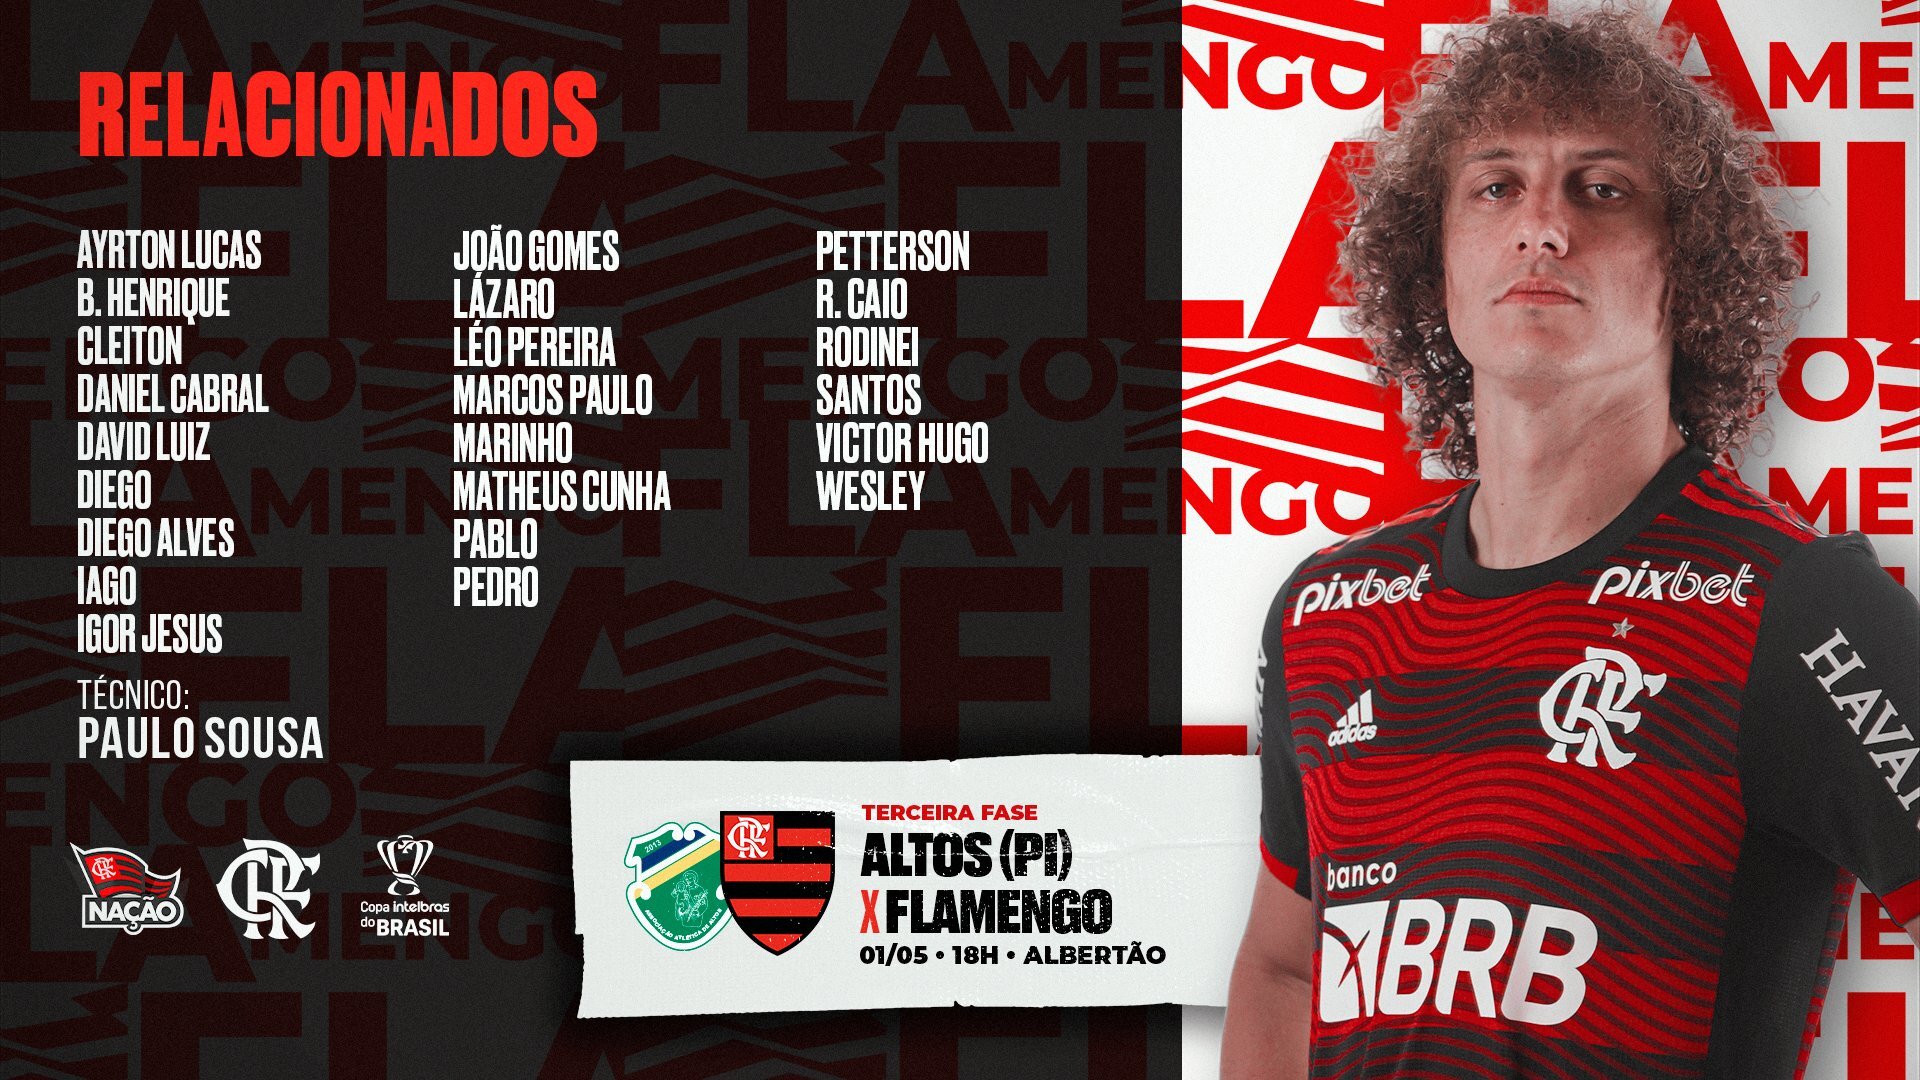 Lista de Relacionados do Flamengo para pegar o Altos-PI pela terceira fase da Copa do Brasil